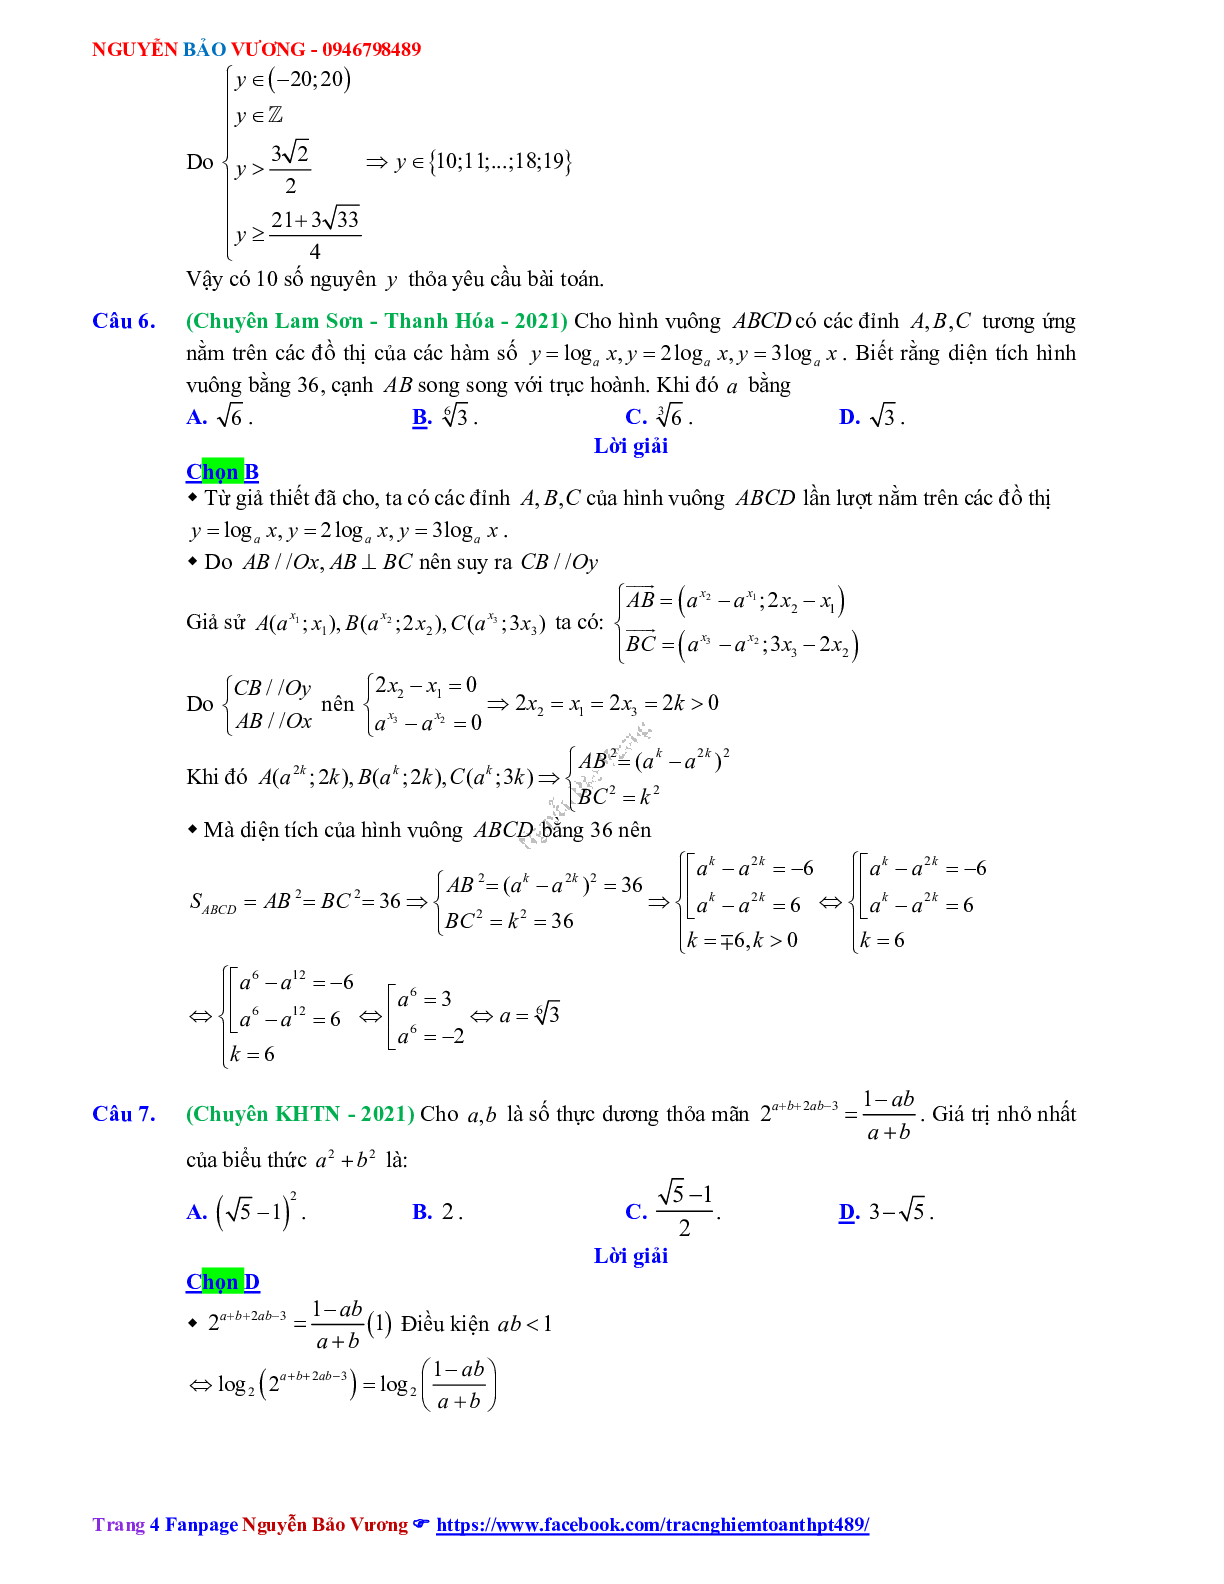 Trắc nghiệm Ôn thi THPT QG Toán 12: Đáp án mũ - lũy thừa - logarit mức độ vận dụng cao (trang 4)